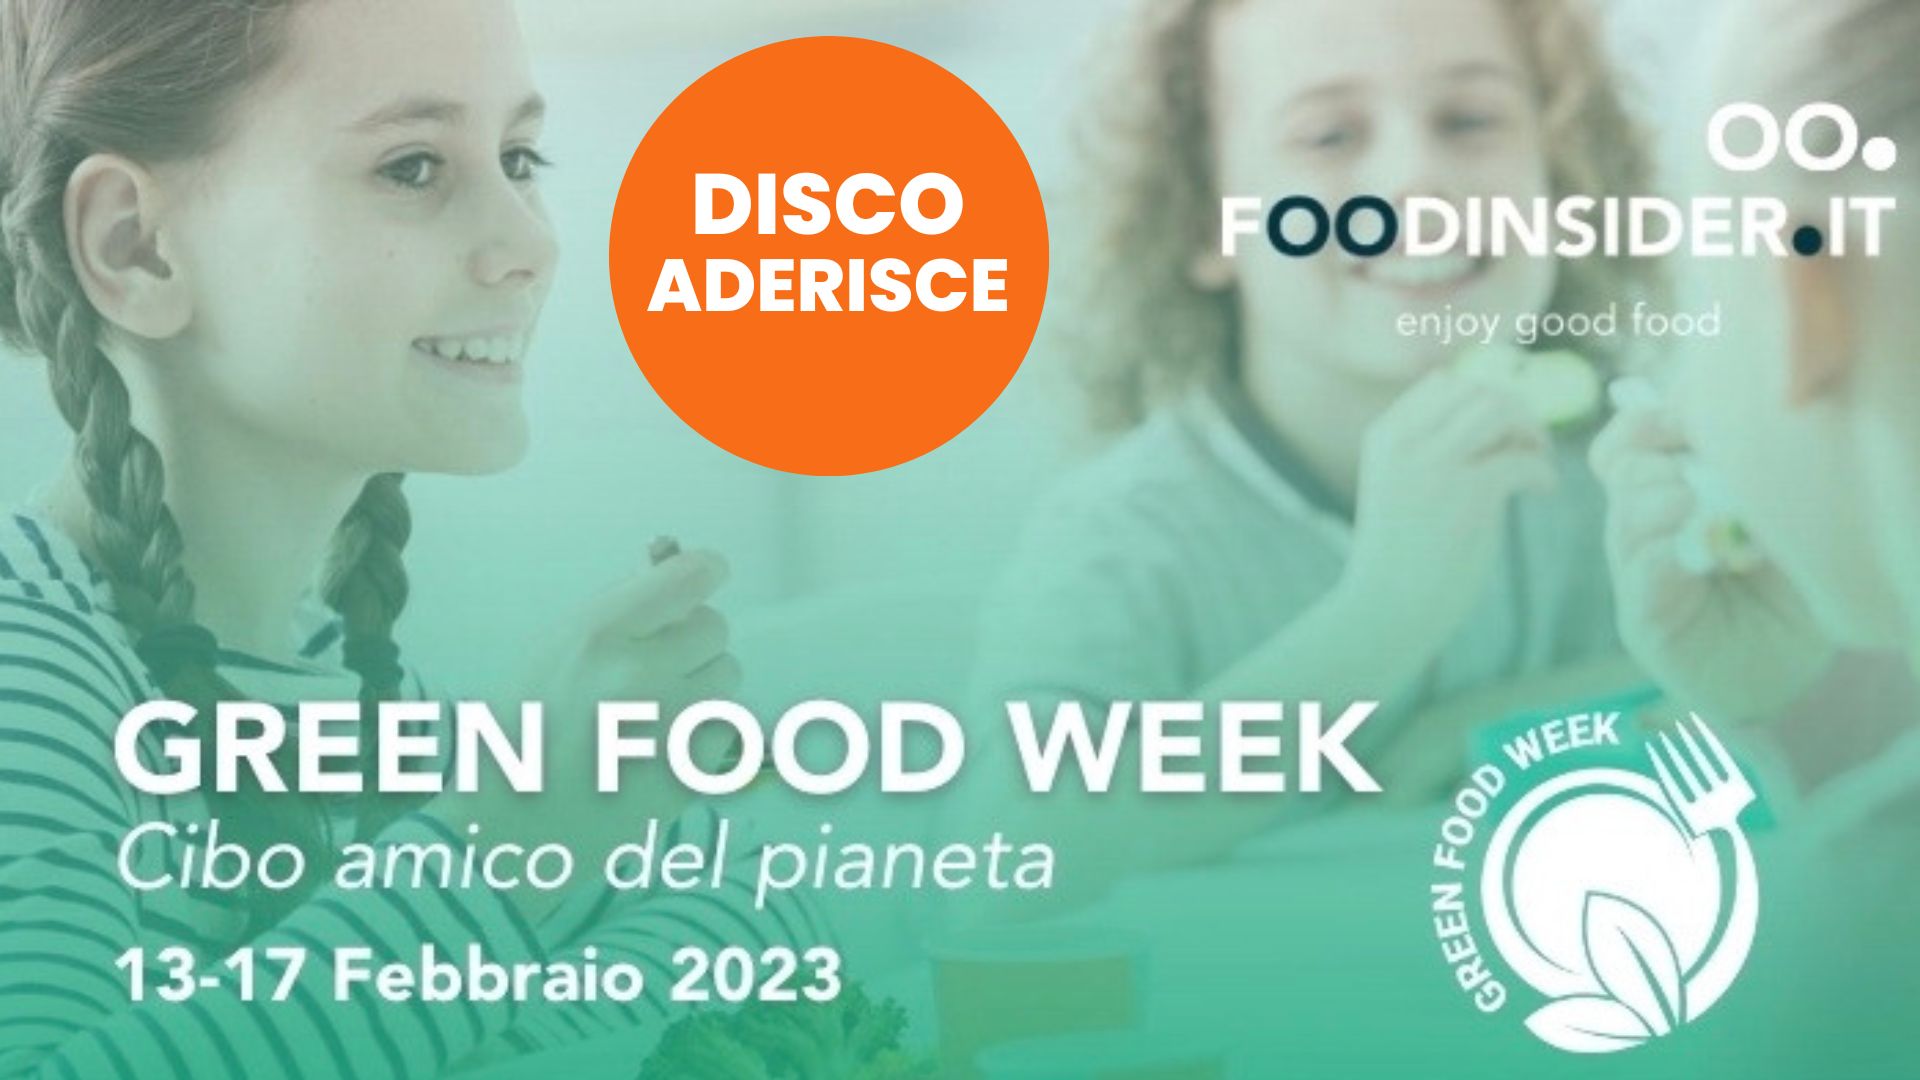 DiSCo aderisce all’iniziativa “Green Food Week: il cibo amico del pianeta”